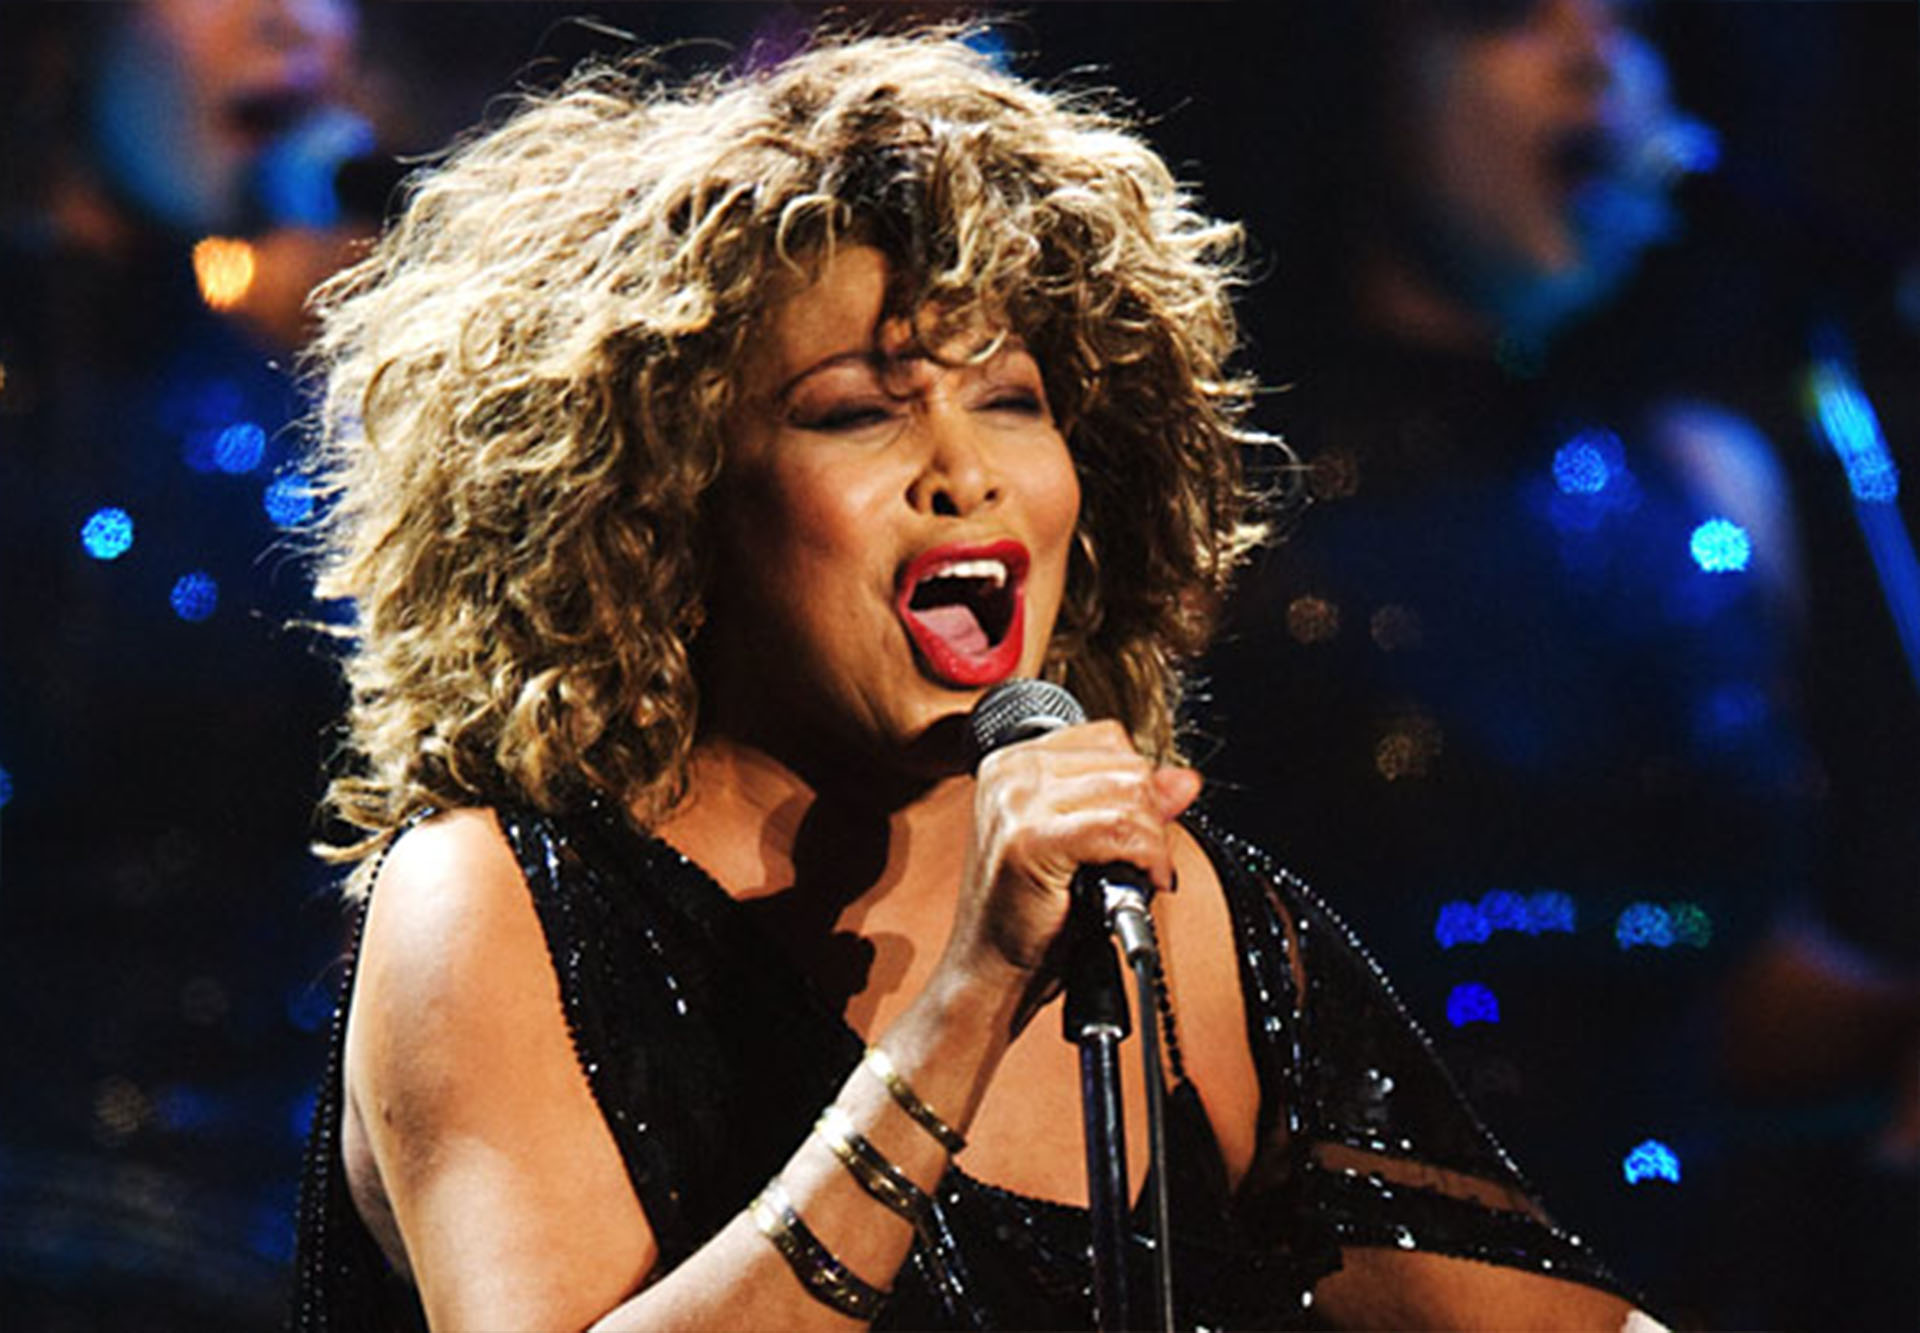 Tina Turner tuvo una vida marcada por el desamor y el maltrato. A los 45 años logró dar un vuelco a su triste historia que le deparó una popularidad inesperada y la llegada del amor